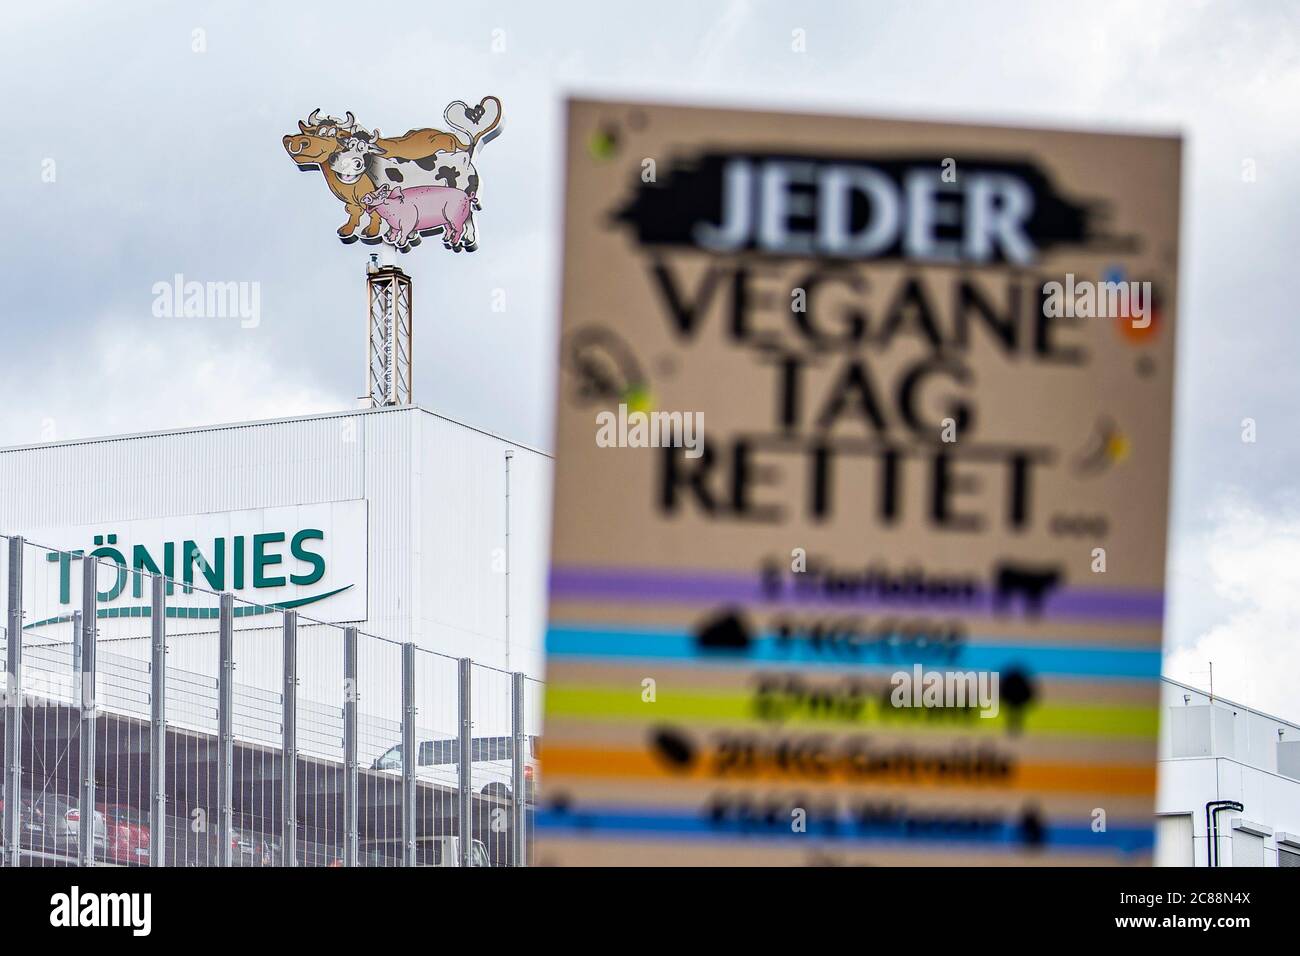 22 luglio 2020, Renania settentrionale-Vestfalia, Rheda-Wiedenbrück: Un manifesto di attivisti per i diritti degli animali dice: 'Ogni giorno vegano salva...' Gli attivisti per i diritti degli animali dell'Ufficio tedesco per il benessere degli animali si presentano davanti alla fabbrica di carne di Tönnies con striscioni e cartelli. Il loro motto è: 'Tönnies uccide! La gente soffre, gli animali muoiono'. Gli agricoltori della regione hanno organizzato una contromondimostrazione. Dalla scorsa settimana il macello è stato riaperto. Attualmente, vi vengono uccisi fino a 10,000 maiali ogni giorno. Foto: David Inderlied/dpa Foto Stock